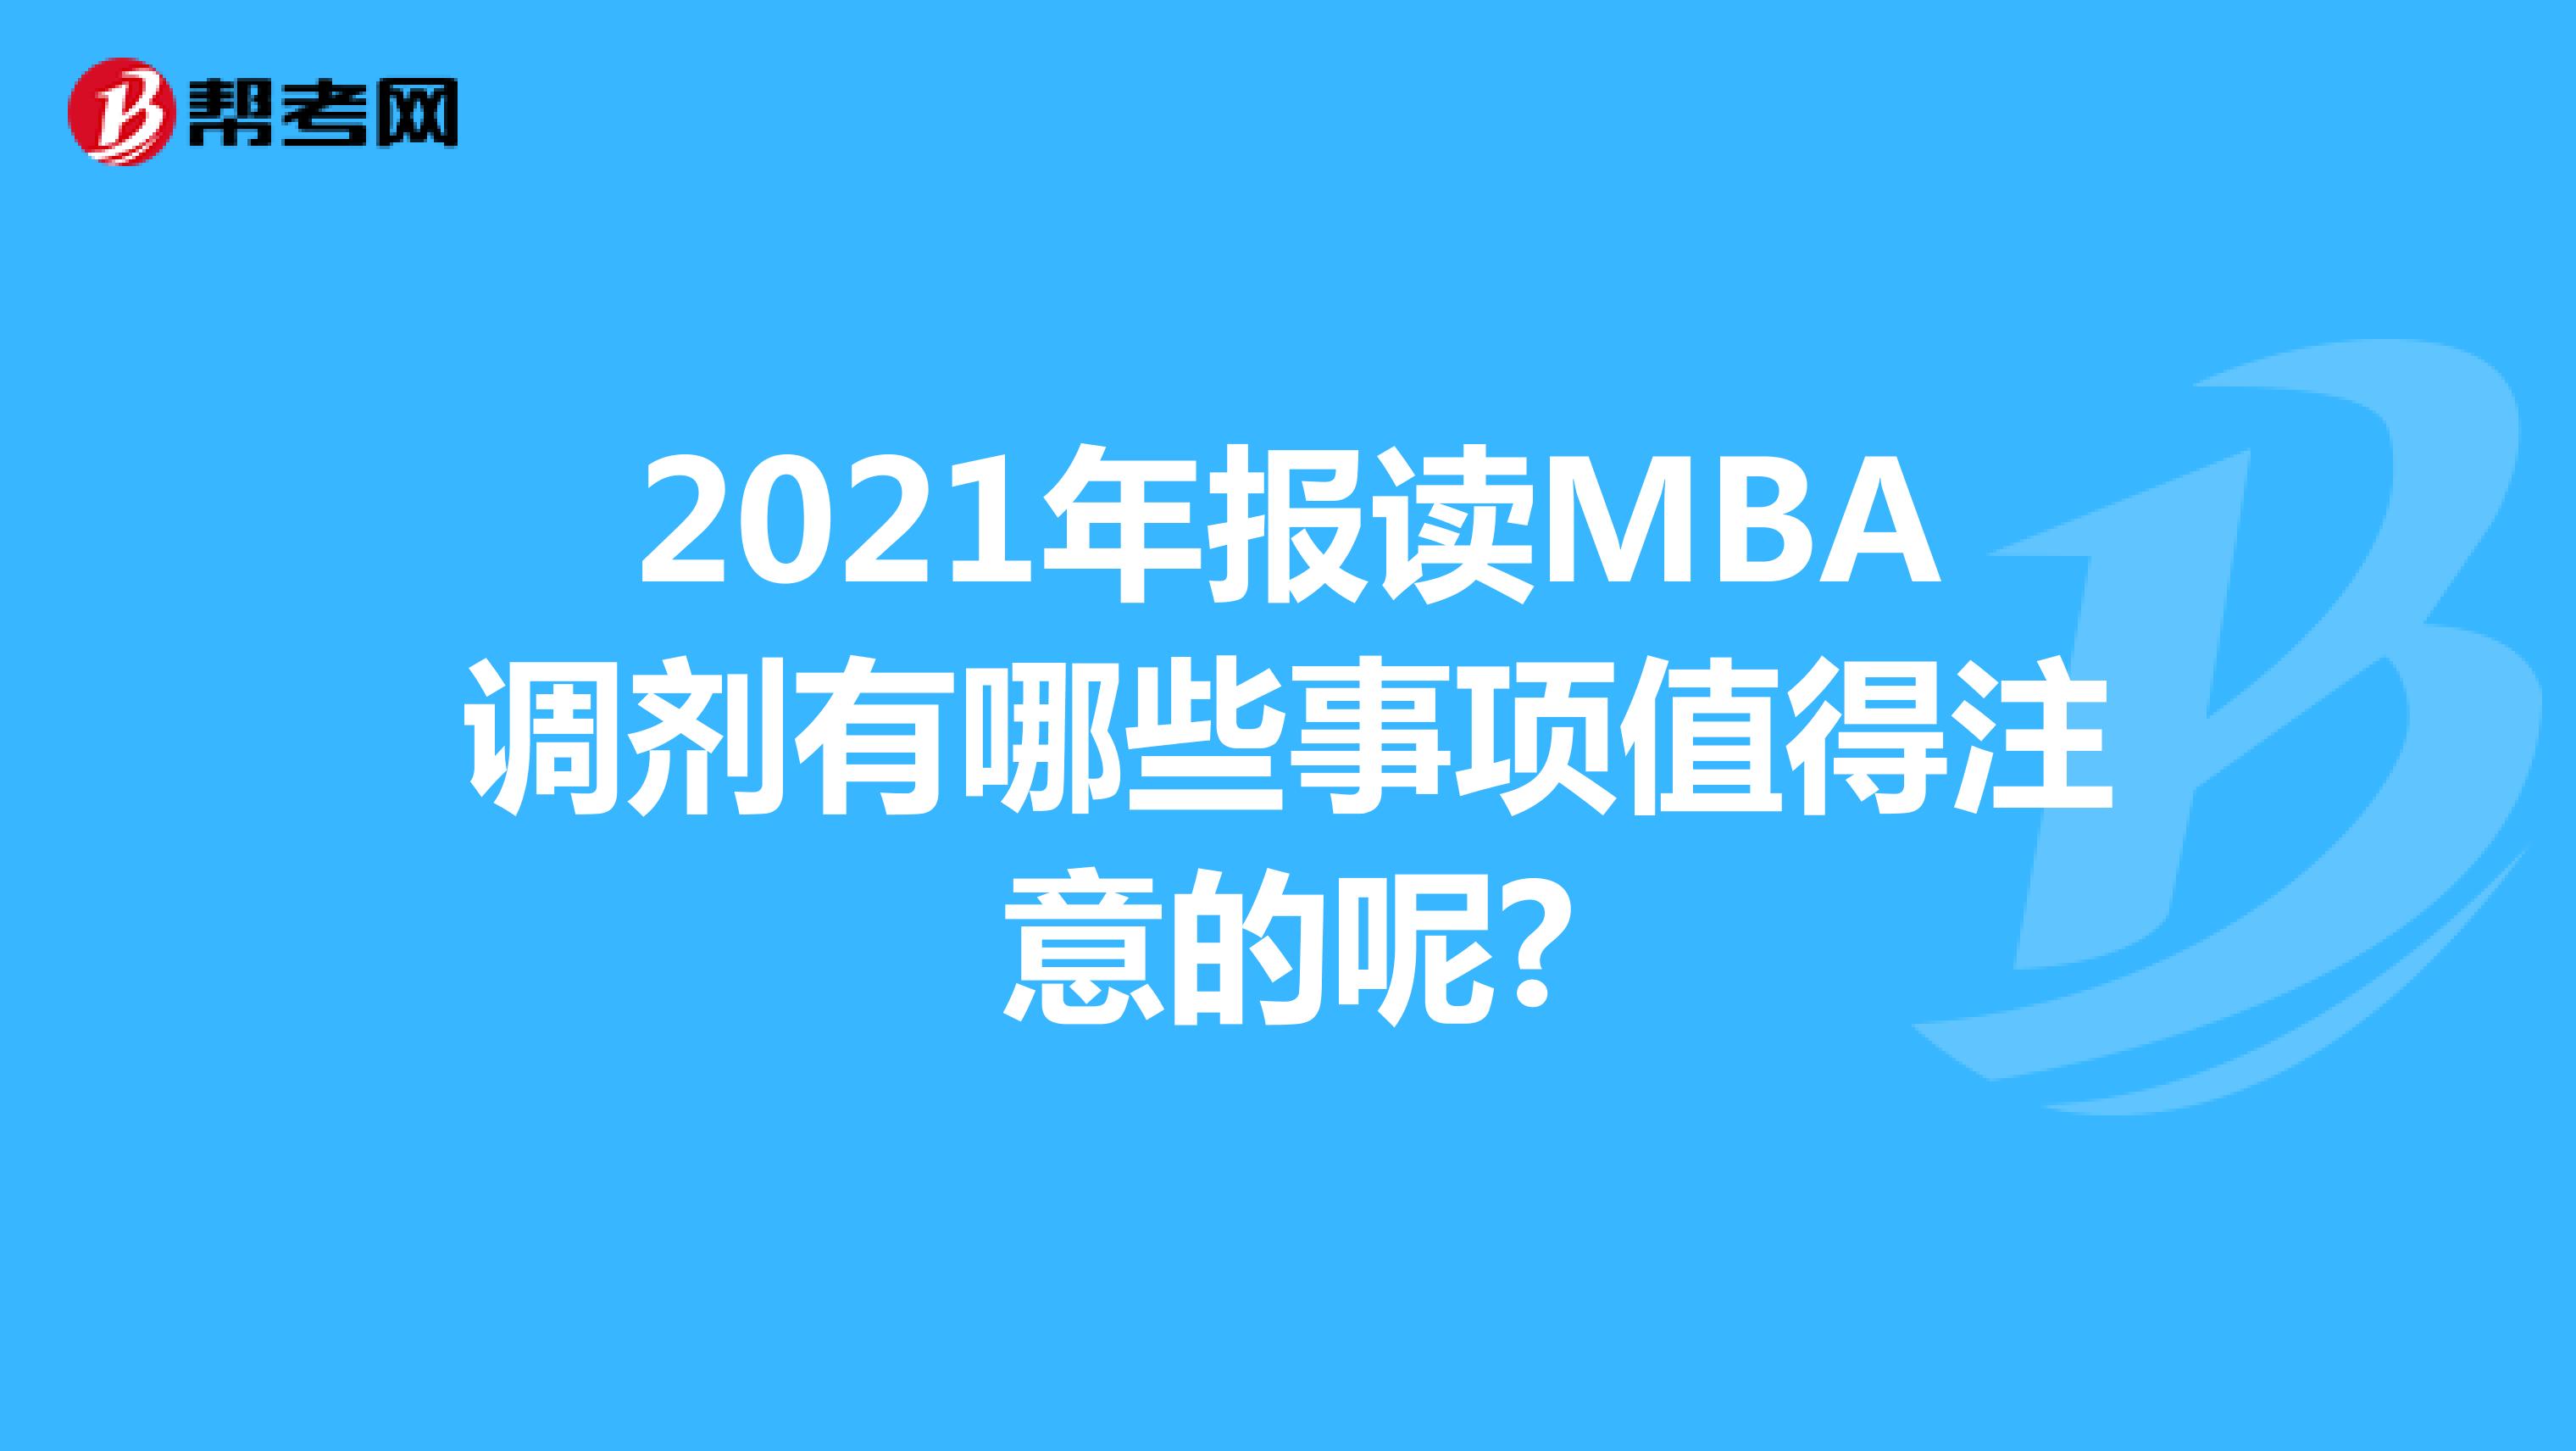 2021年报读MBA调剂有哪些事项值得注意的呢?